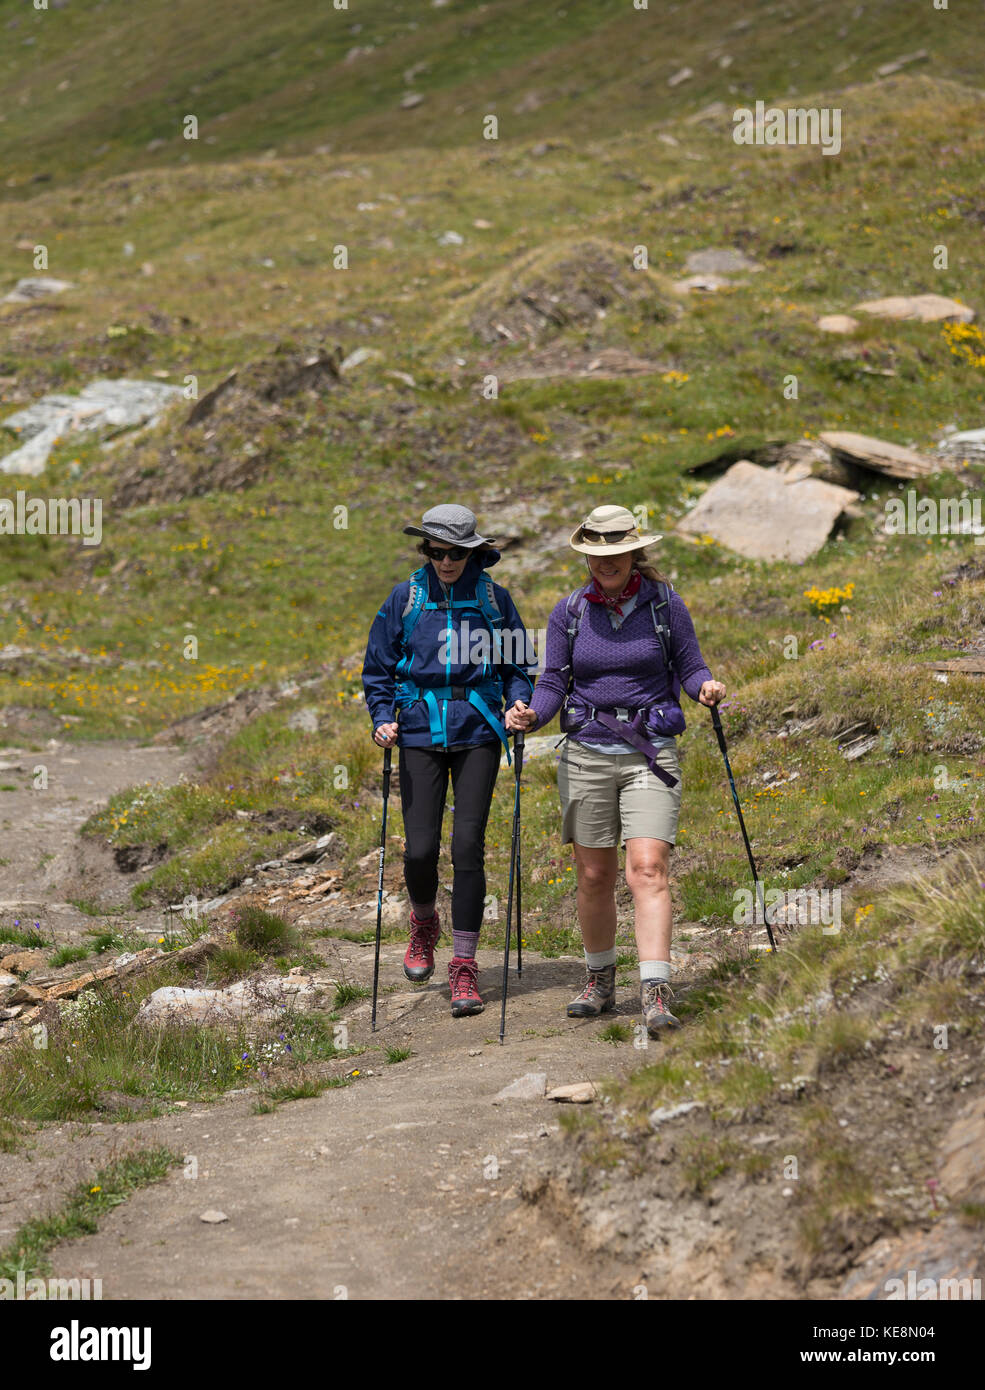 Valle di moiry, Svizzera - due donne escursionismo nelle alpi Pennine nel canton Vallese. Foto Stock